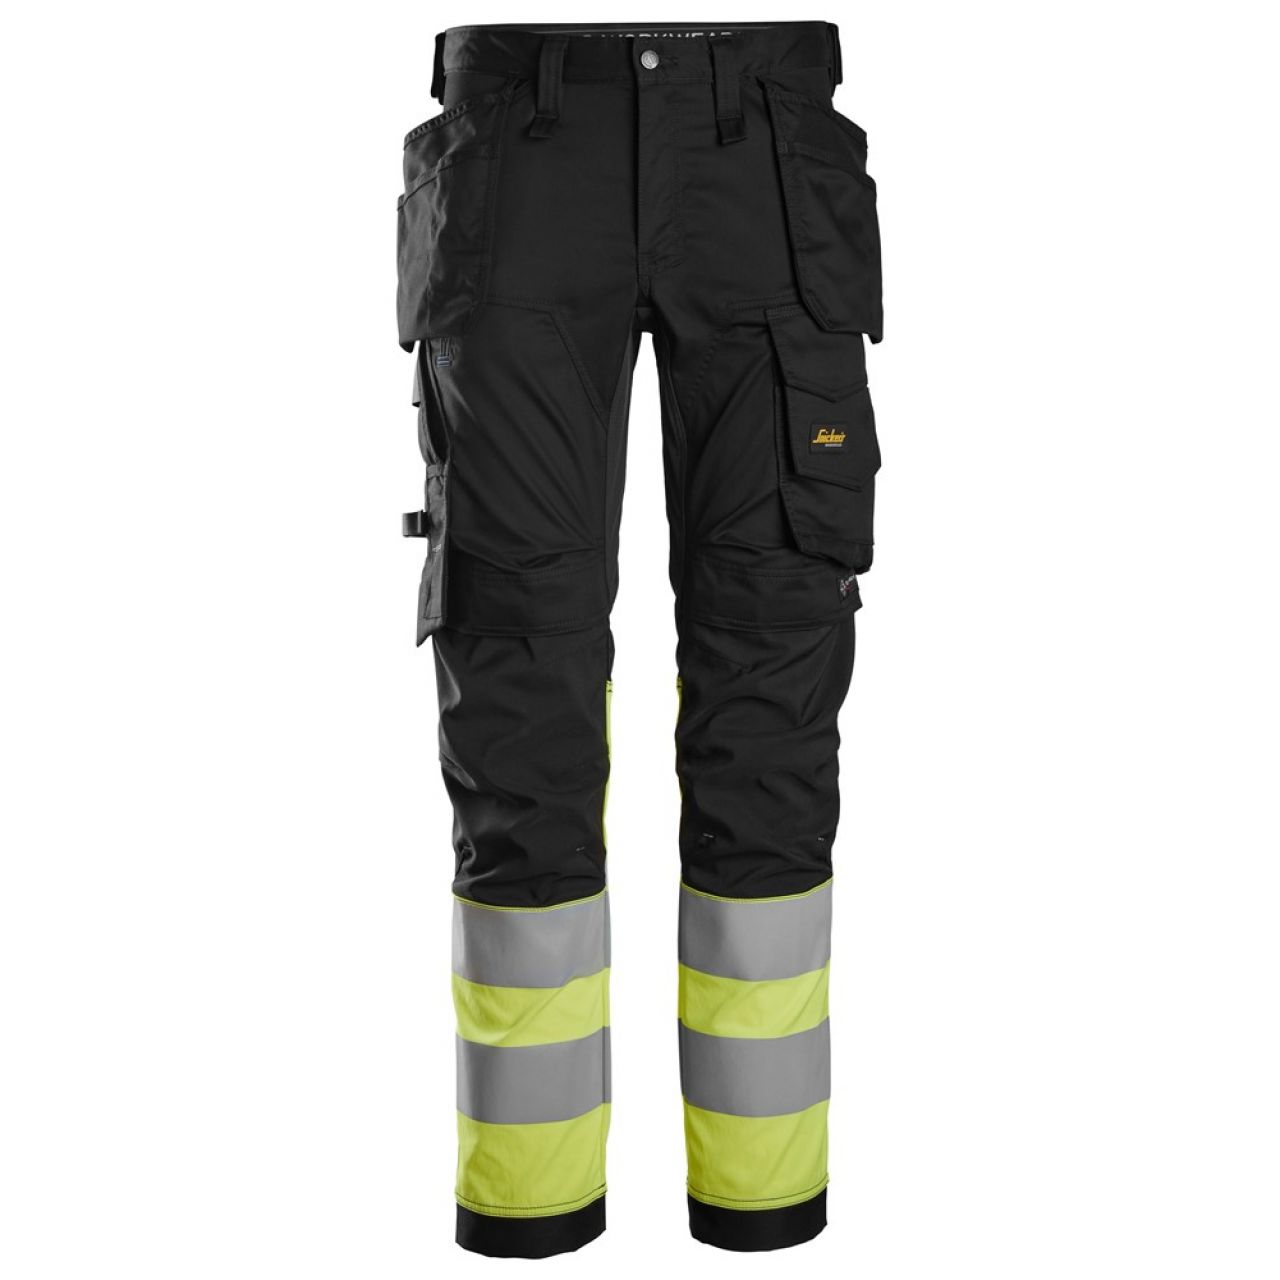 6234 Pantalones largos de trabajo elásticos de alta visibilidad clase 1 con bolsillos flotantes negro-amarillo talla 54